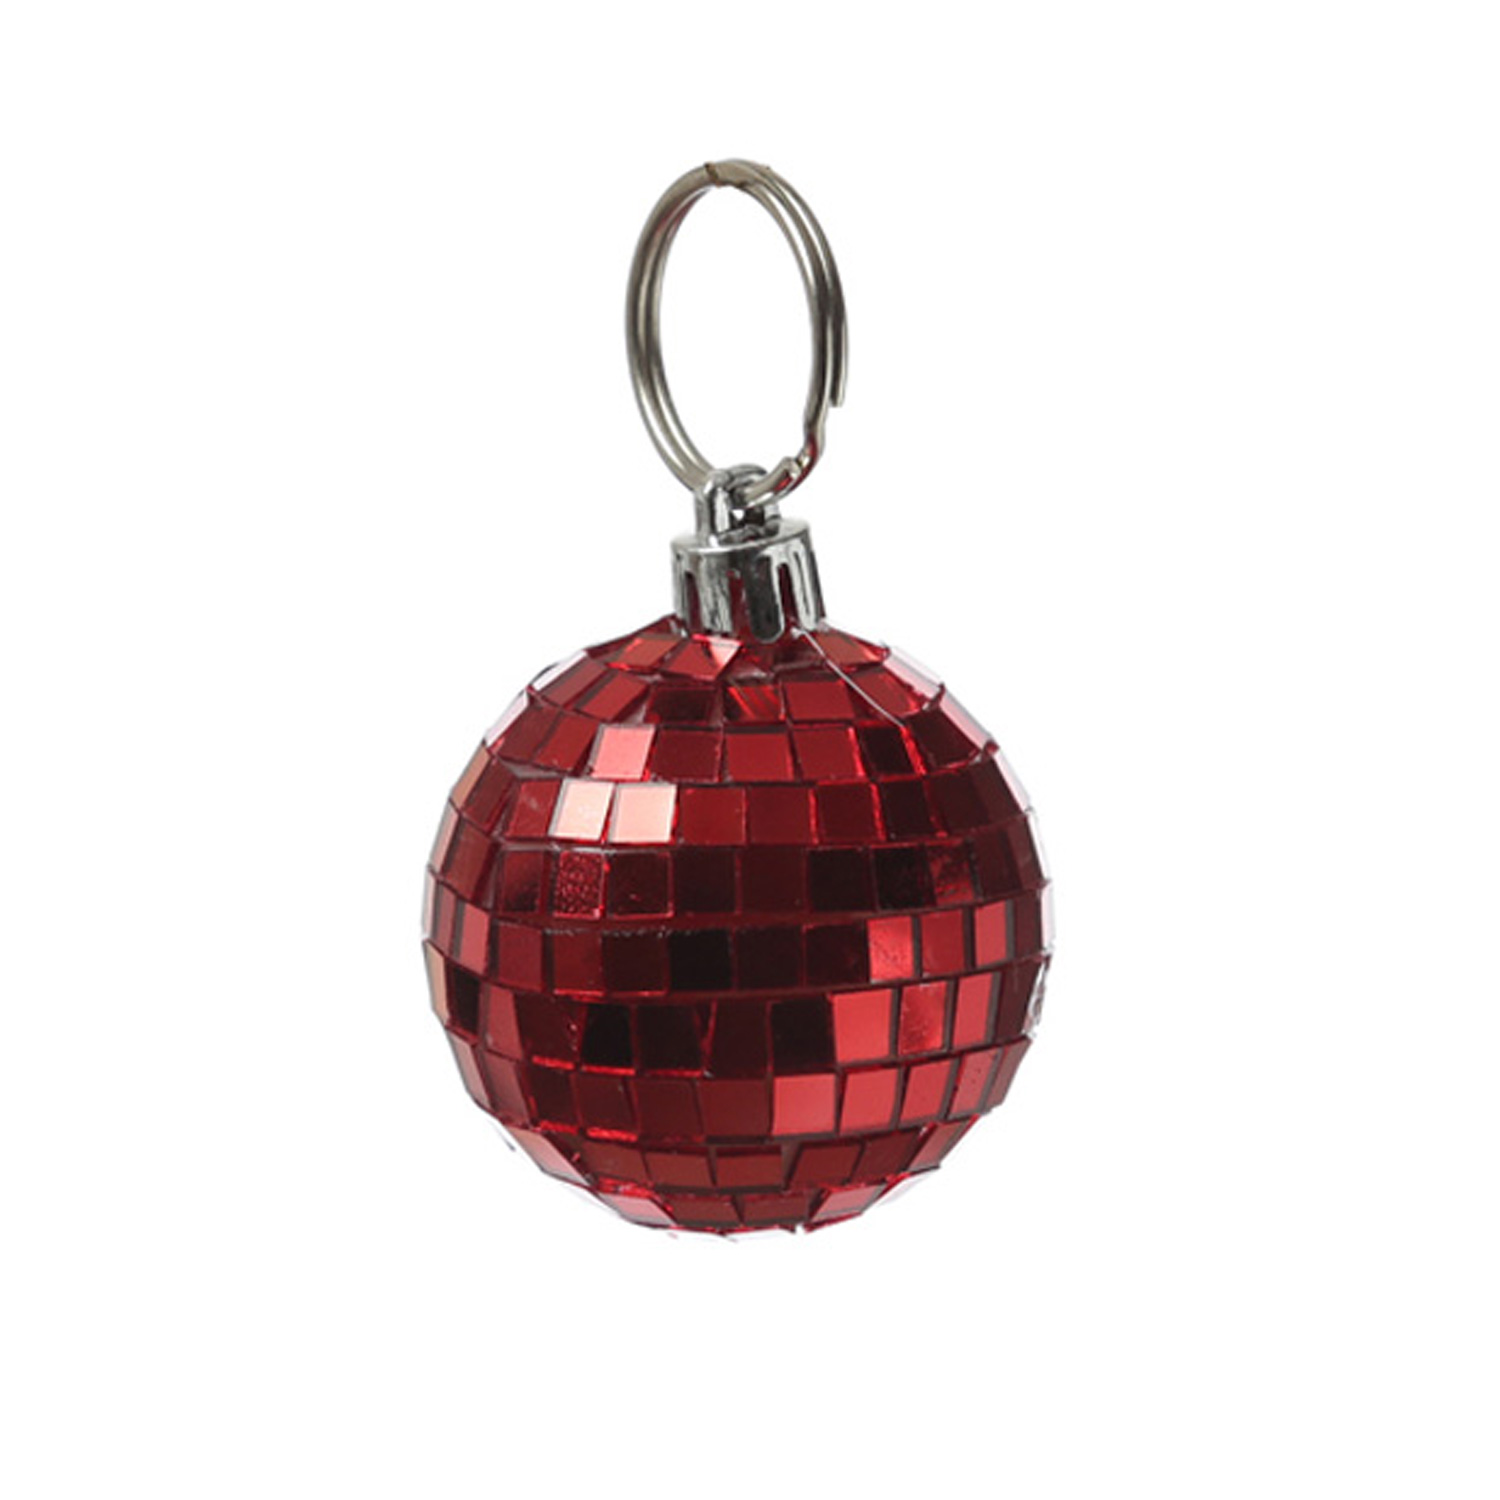 Spiegelkugel 5cm rot- Discokugel Echtglas zur Dekoration - mirrorball red